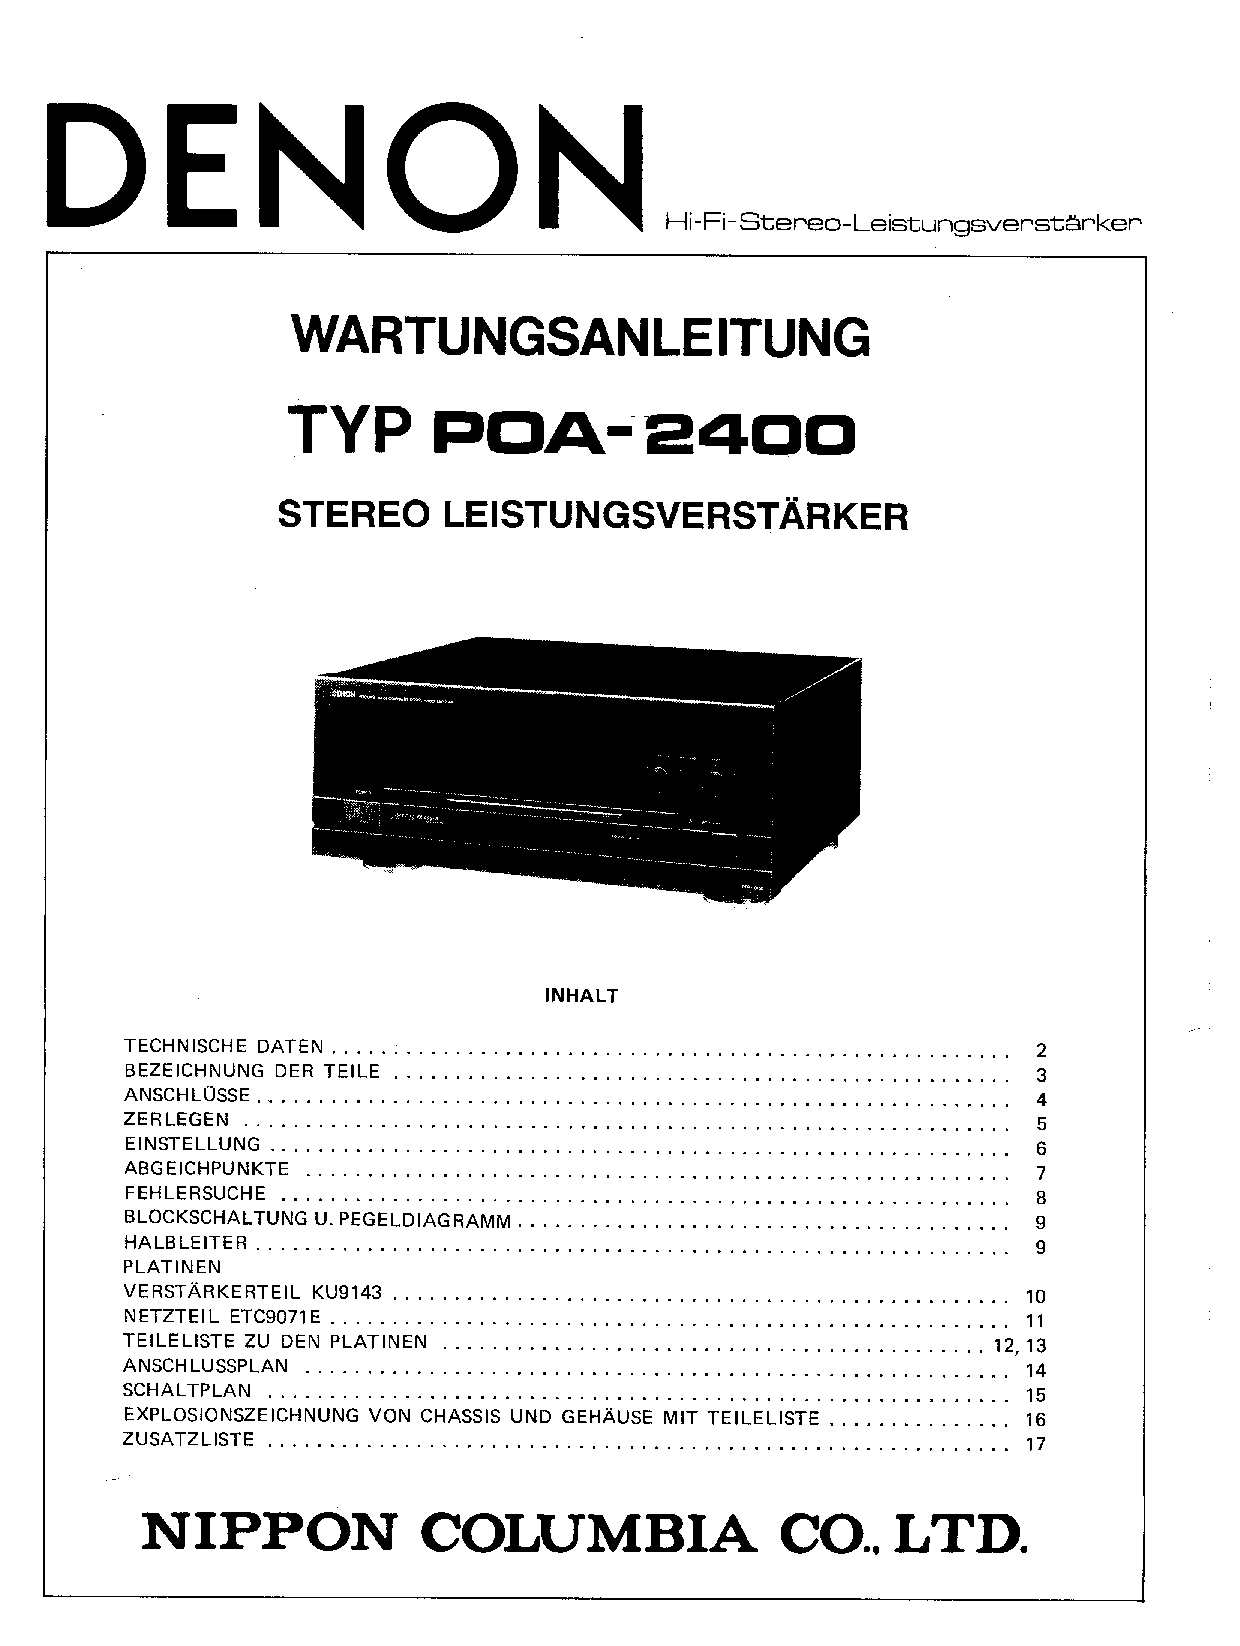 Denon POA-2400 Service Manual